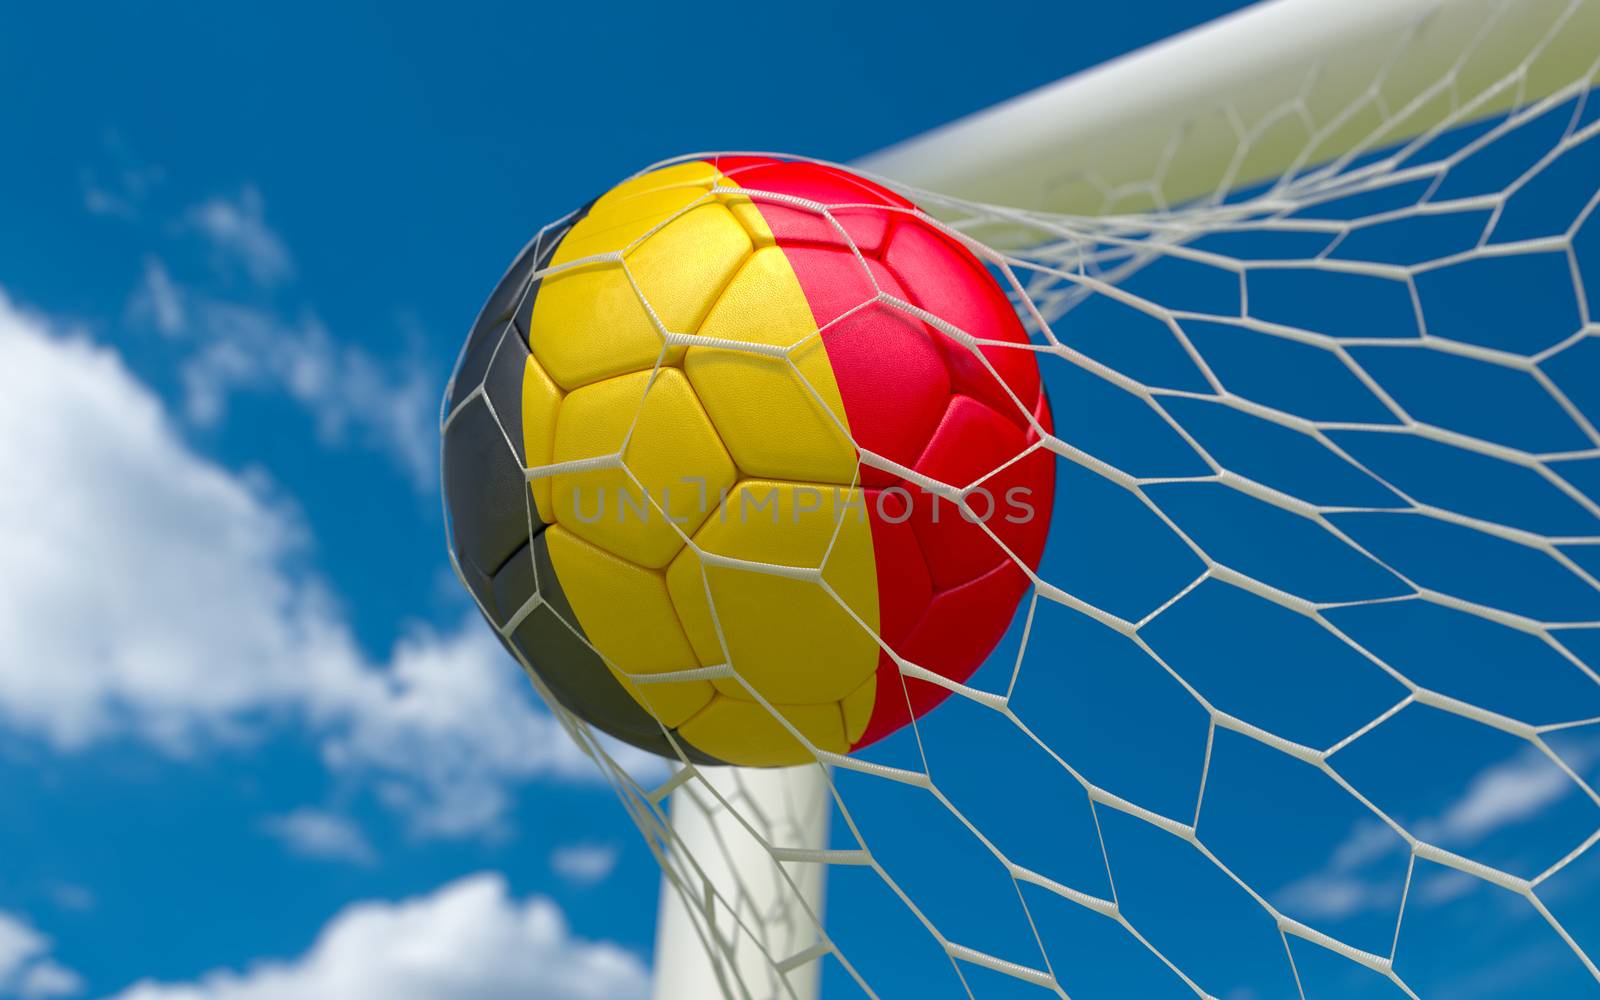 Belgium flag and soccer ball in goal net by Barbraford